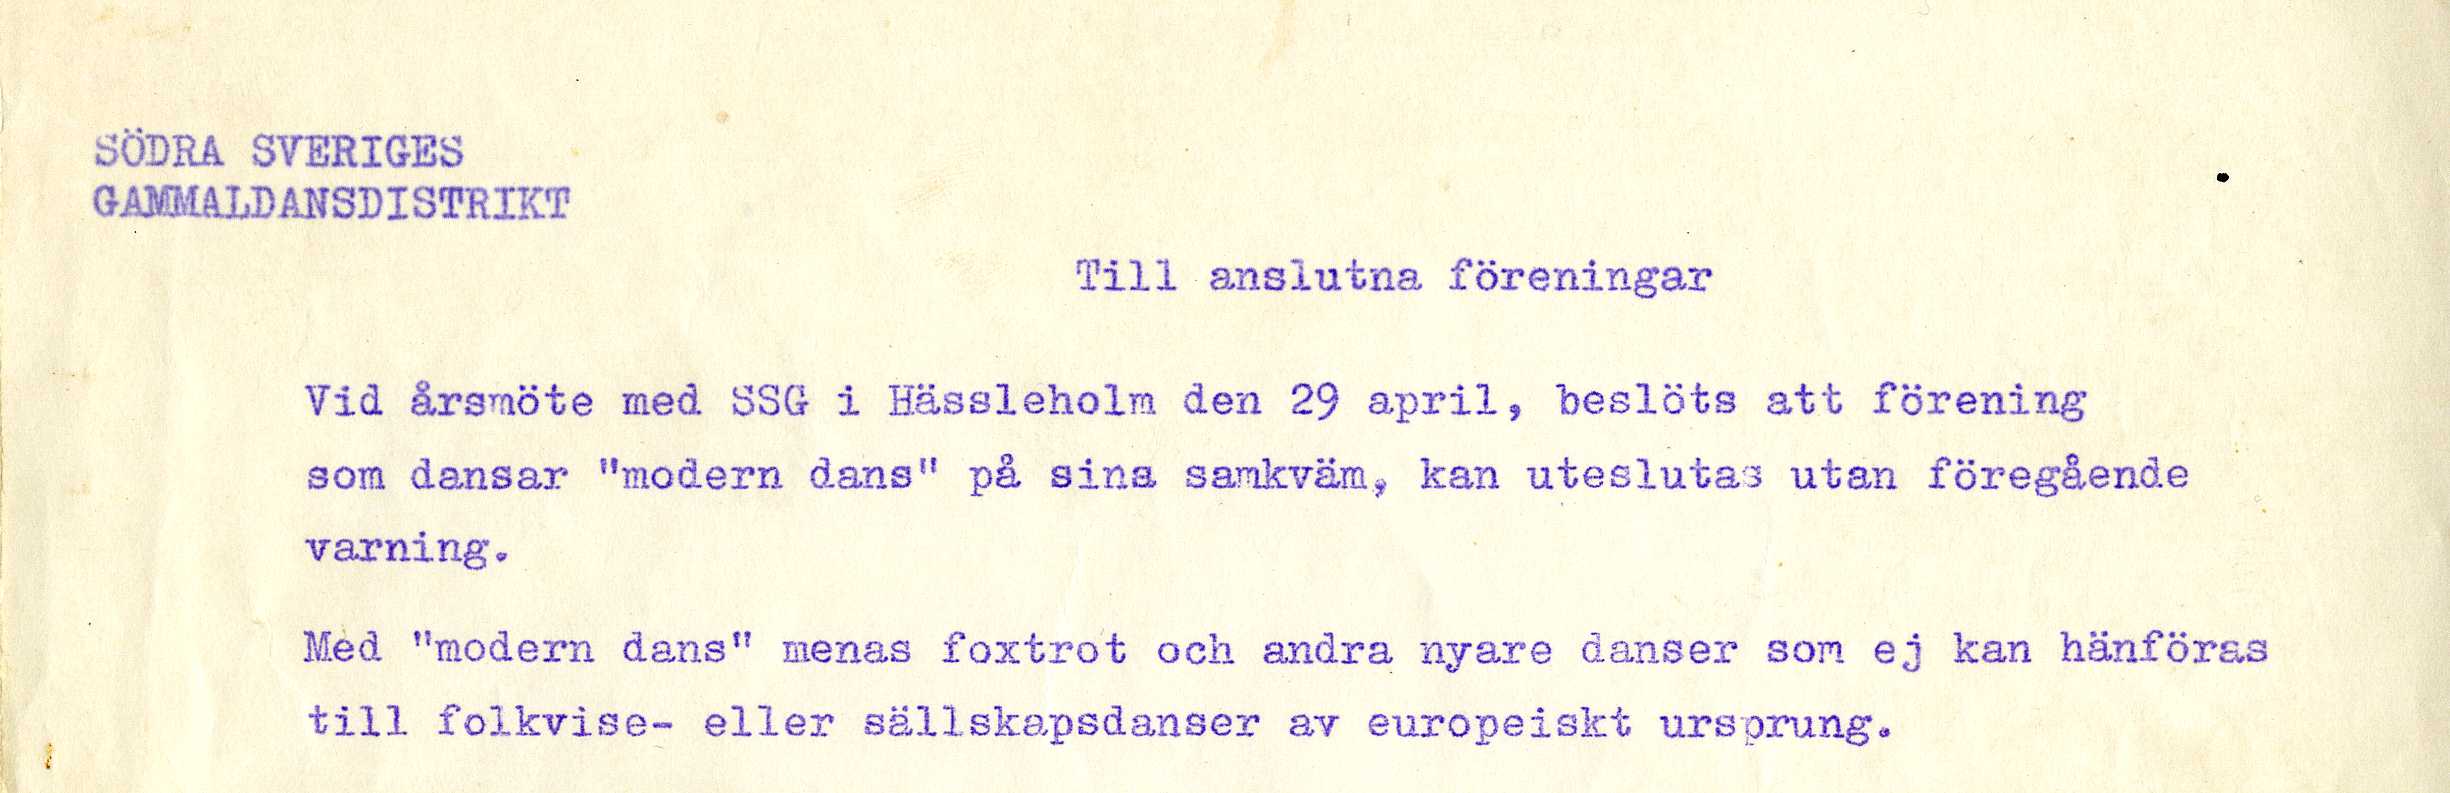 Utdrag ur SSG:s skrivelse utsänd till gammaldansföreningarna ca 1961.